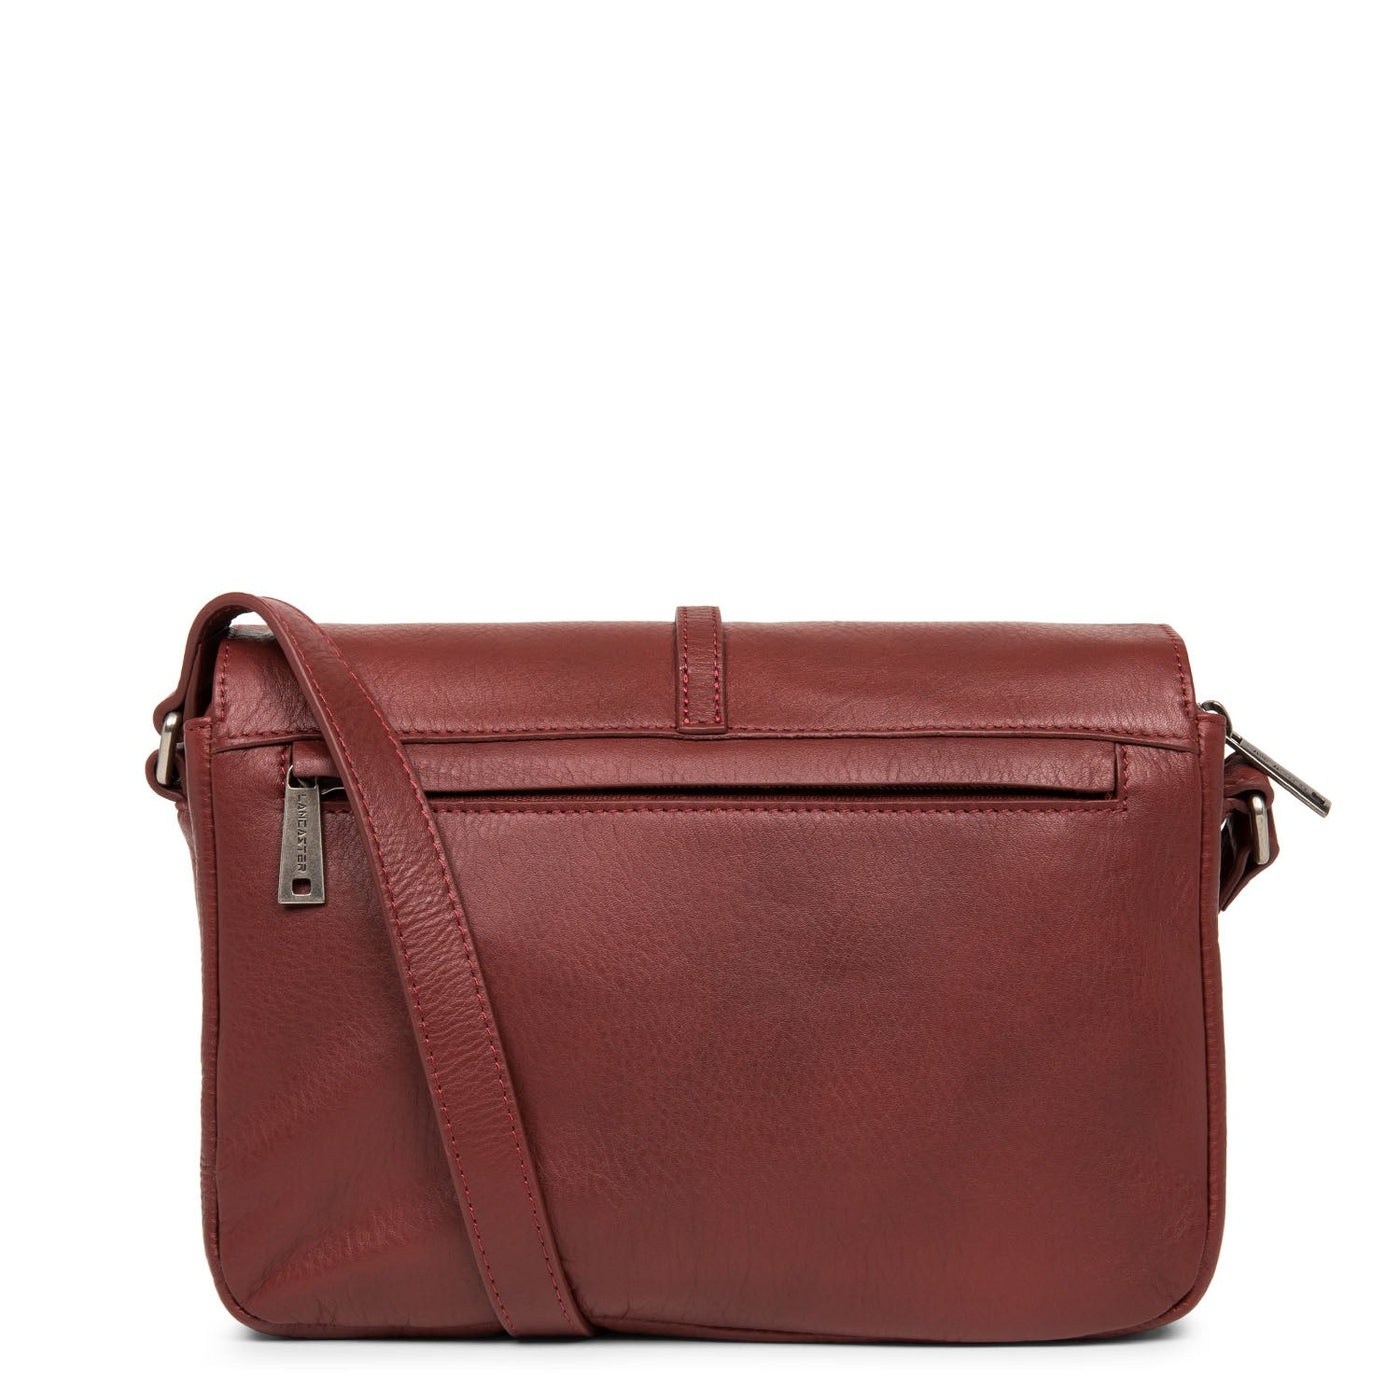 m crossbody bag - soft vintage nova #couleur_bordeaux